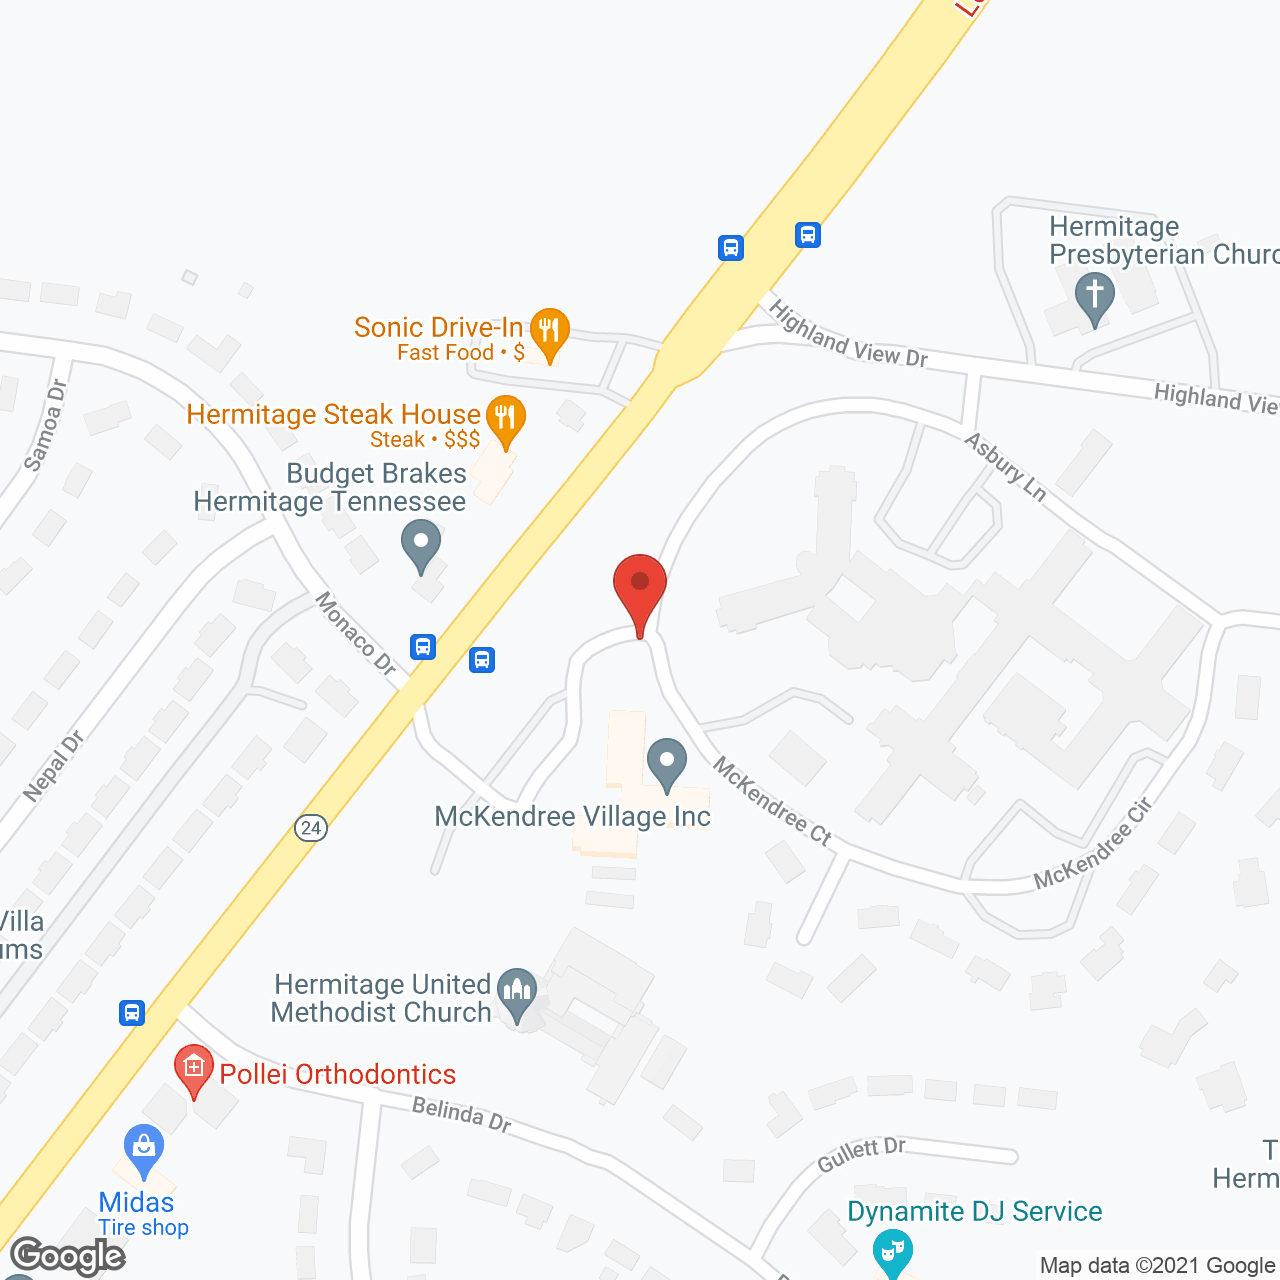 McKendree Village in google map